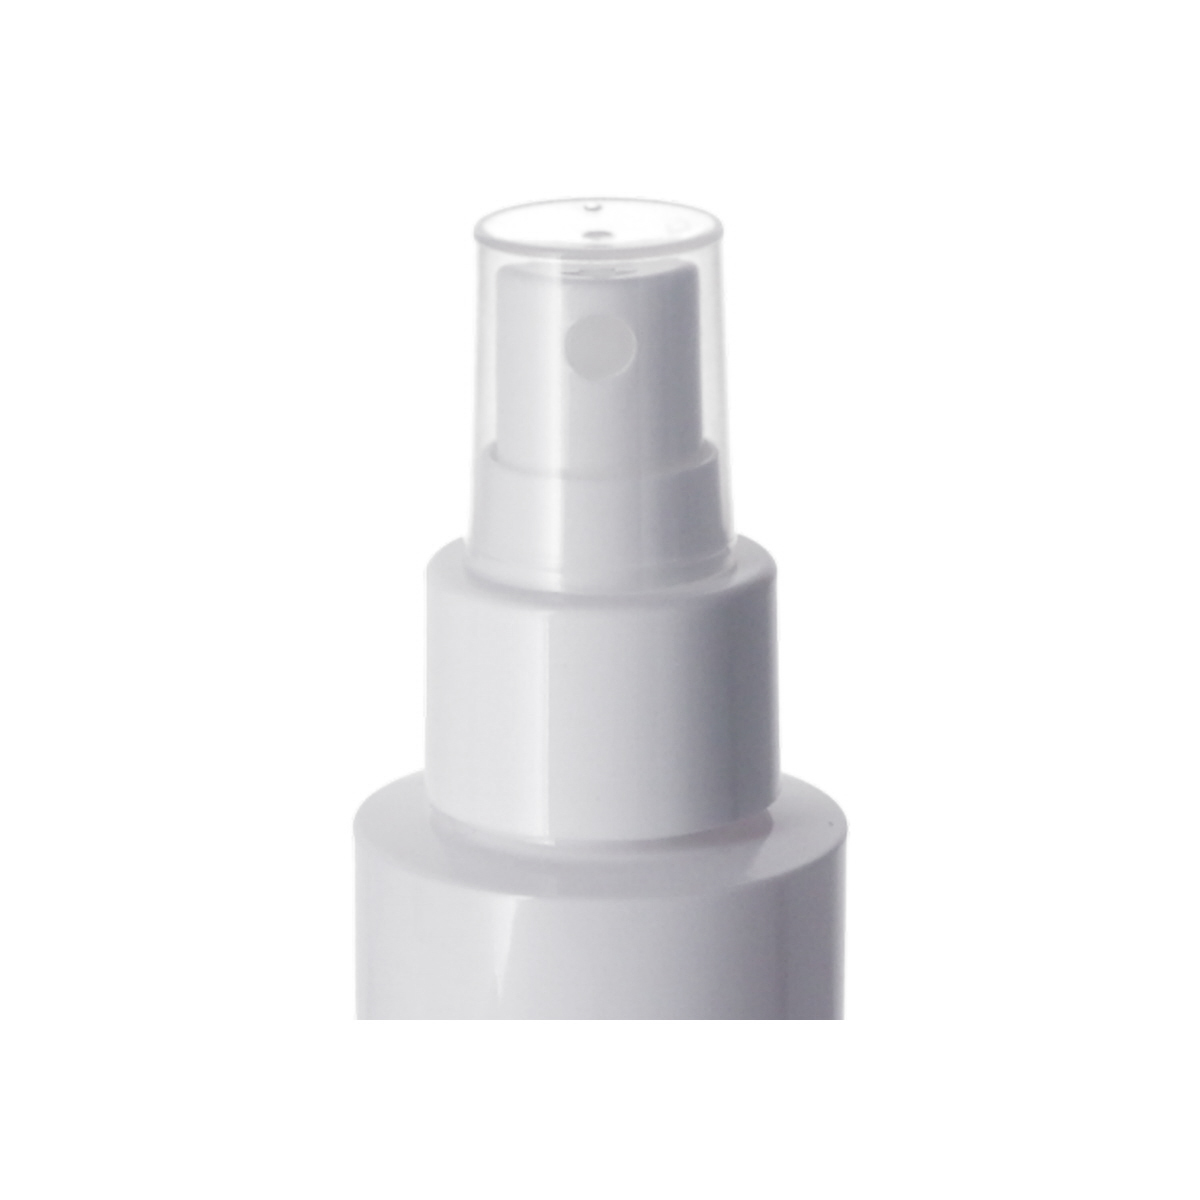 Sprayer Pumps,<0.2cc,Sprayer Pumps,Facial toner,Hair toner,ordinary mist